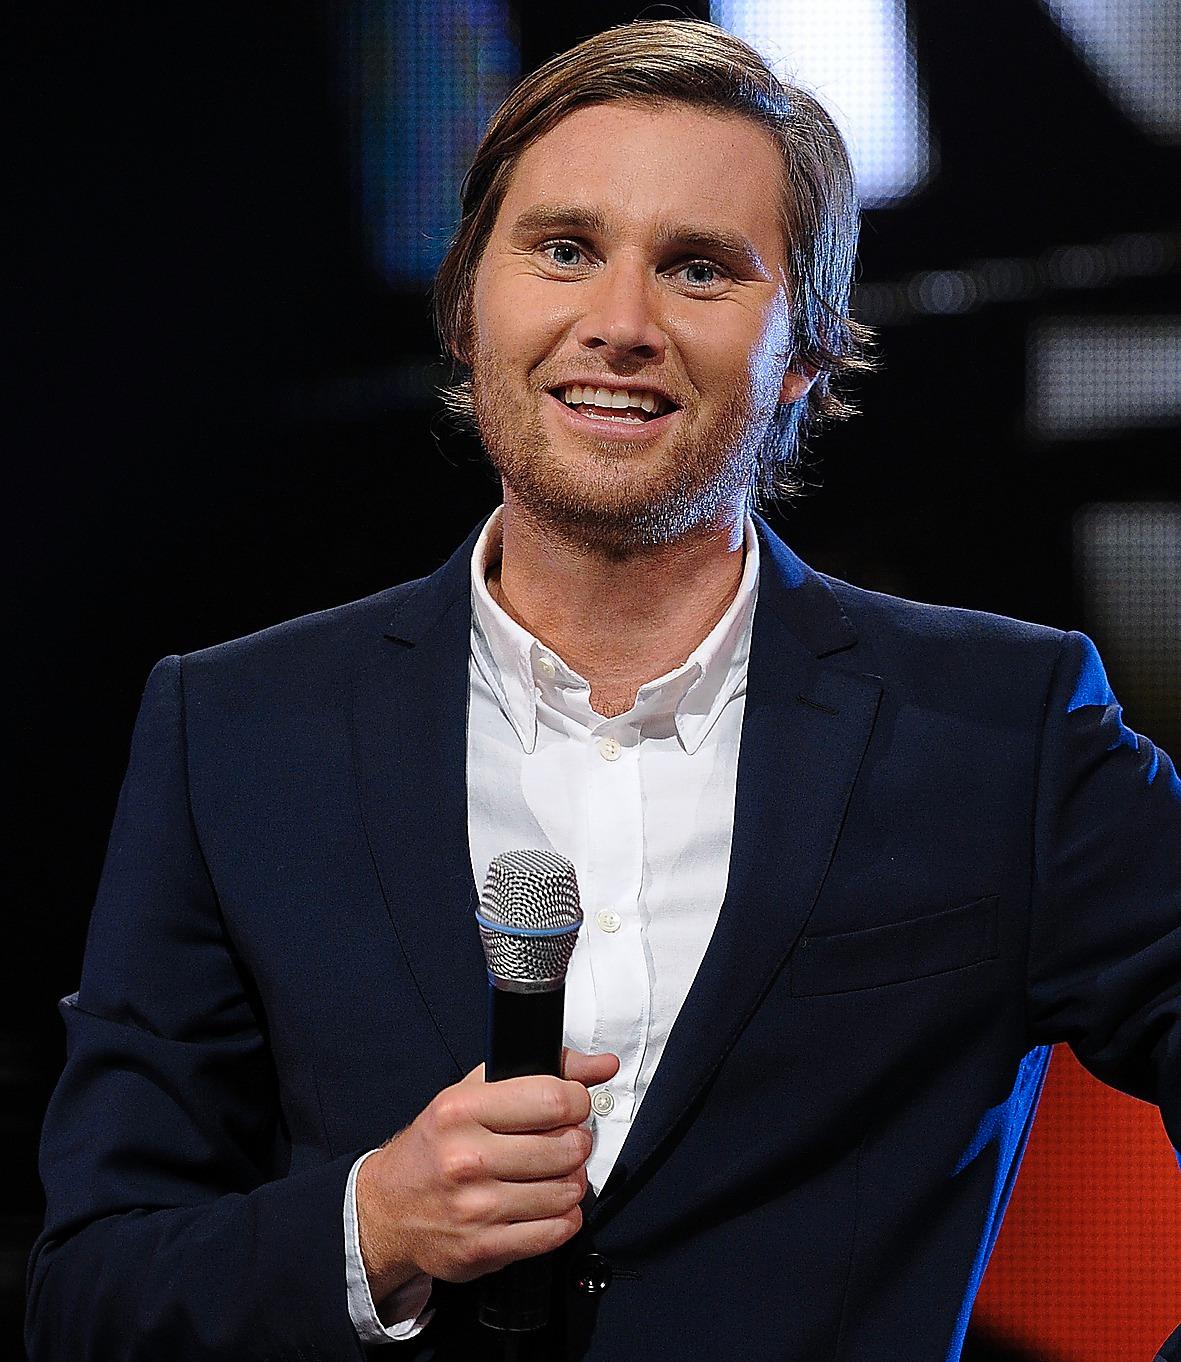 Ola Selmén har bland annat varit programledare för ”Amigo” i SVT och ”True talent” på TV3. Mest känd är han dock som barnprogramledare.